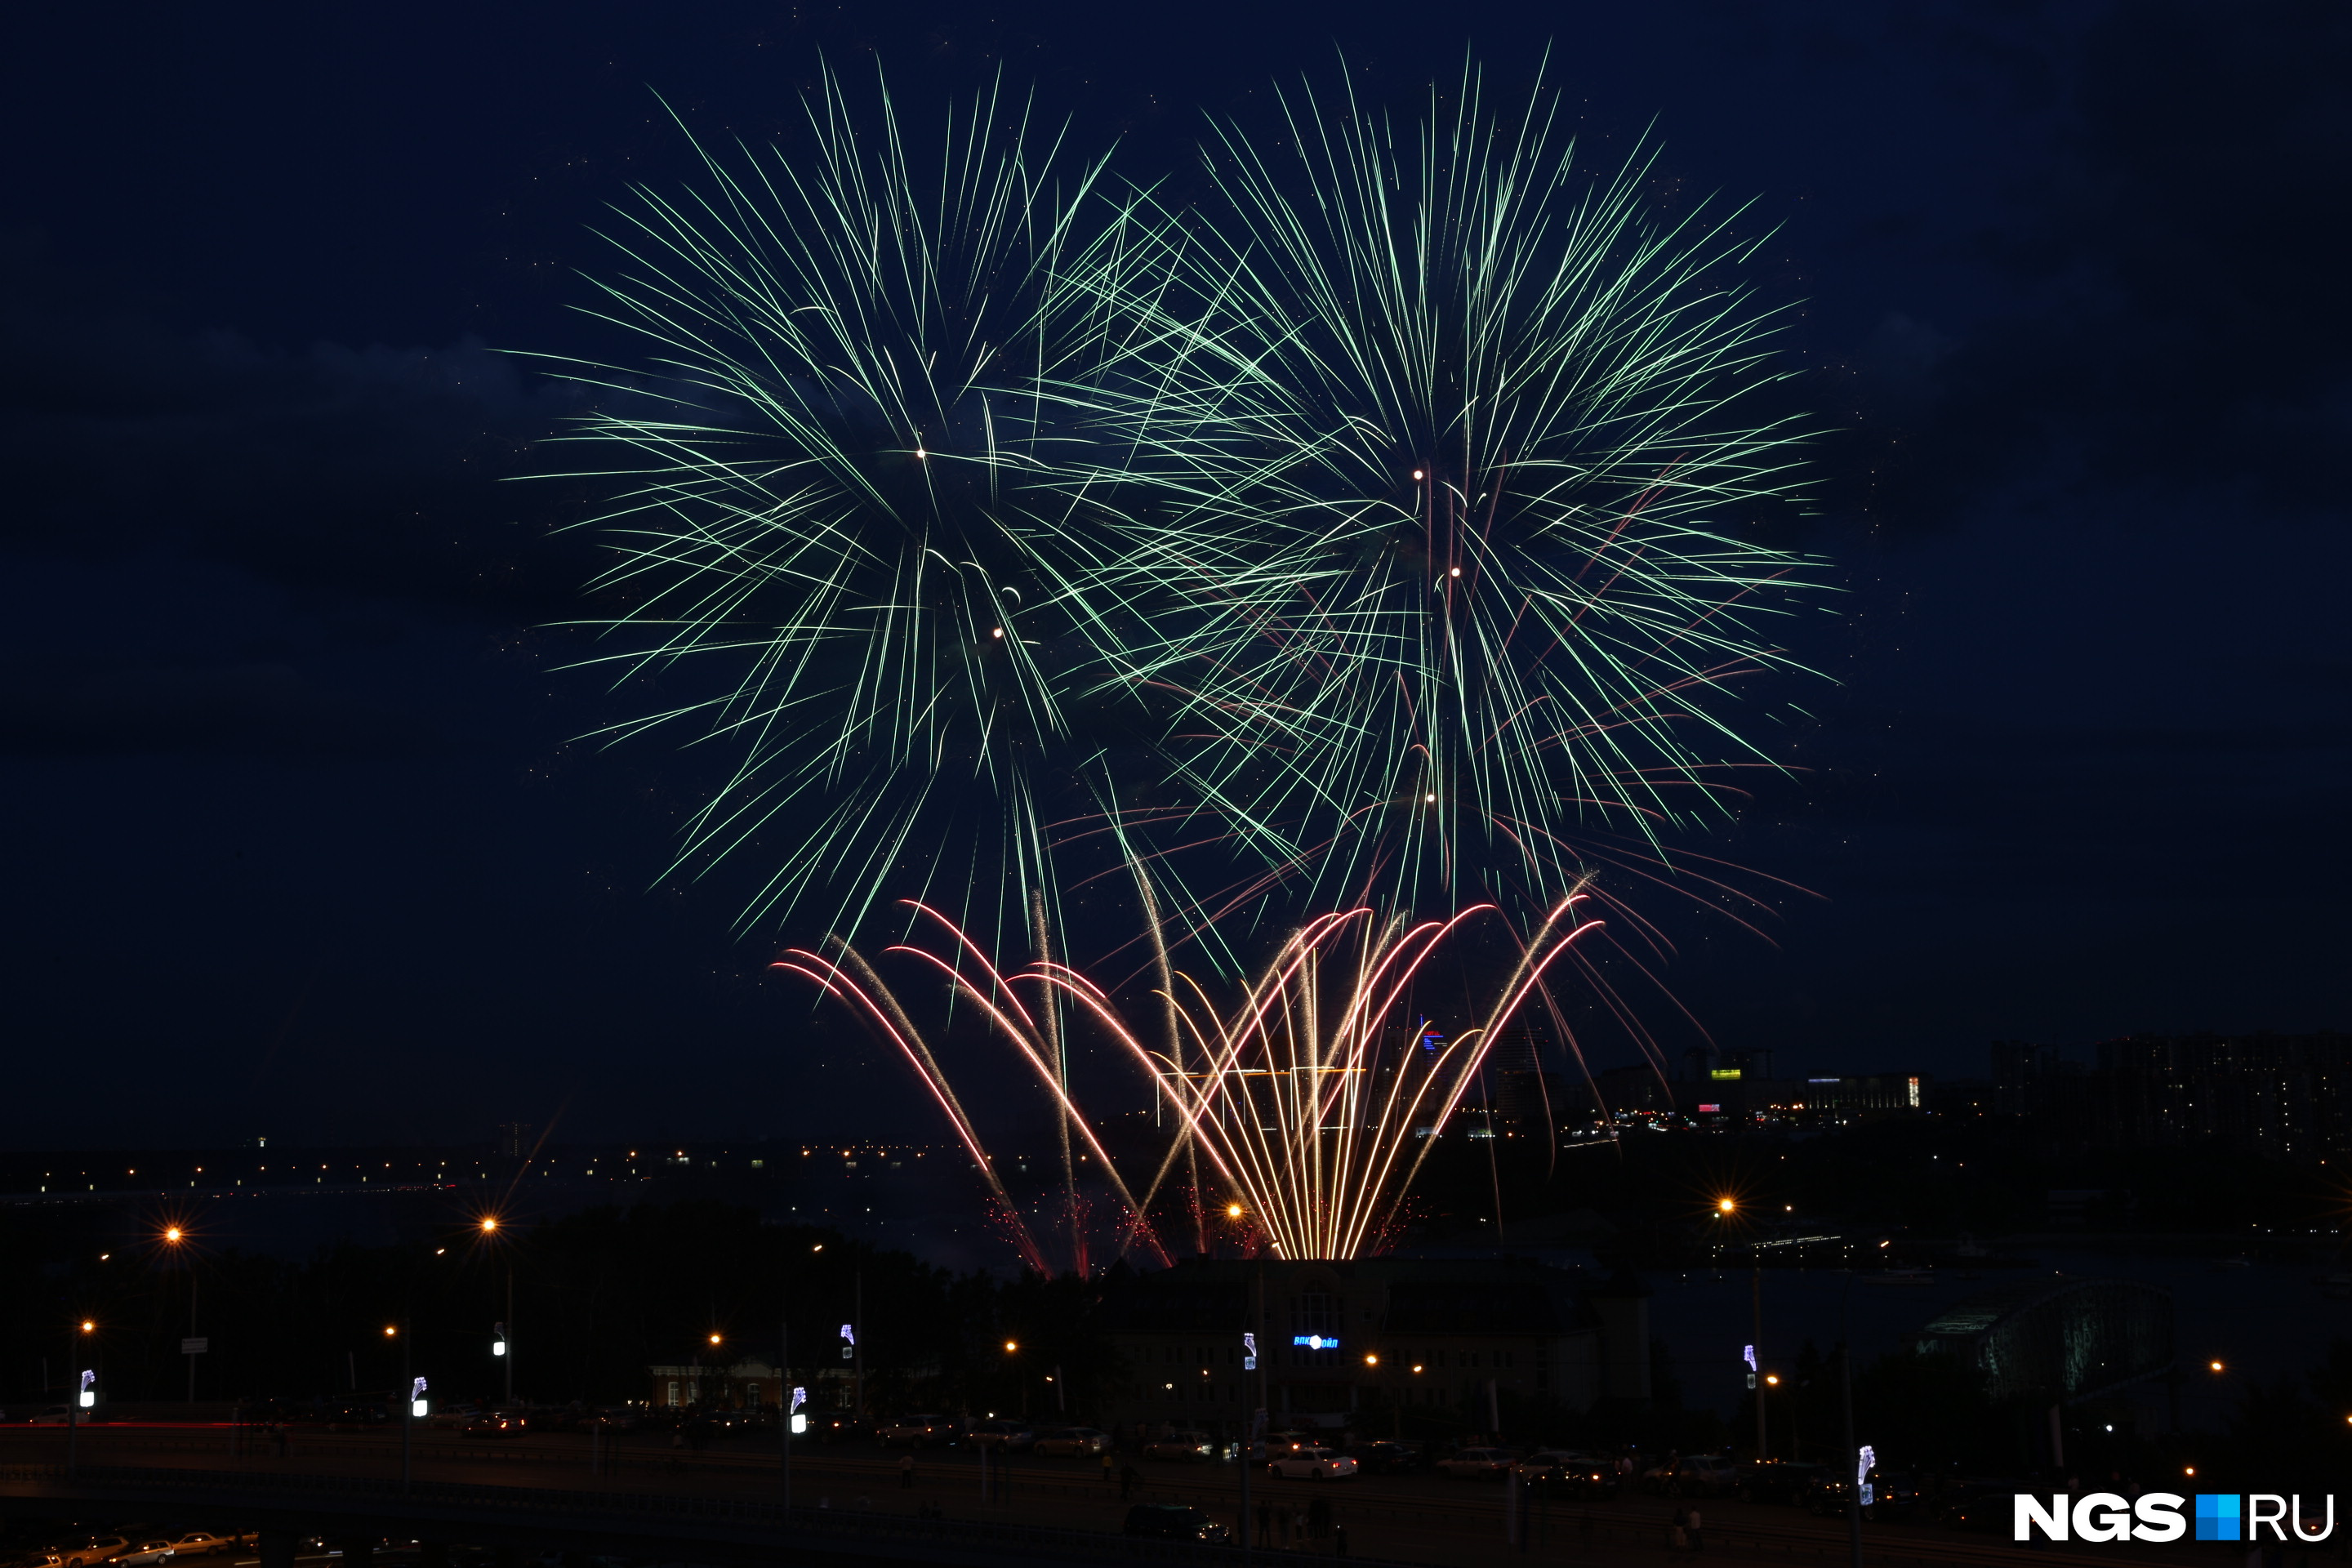 Самый продолжительный фейерверк новосибирцы могли наблюдать на Михайловской набережной — он состоялся в рамках фестиваля фейерверков «Огни в честь любимого города!» и длился 40 минут